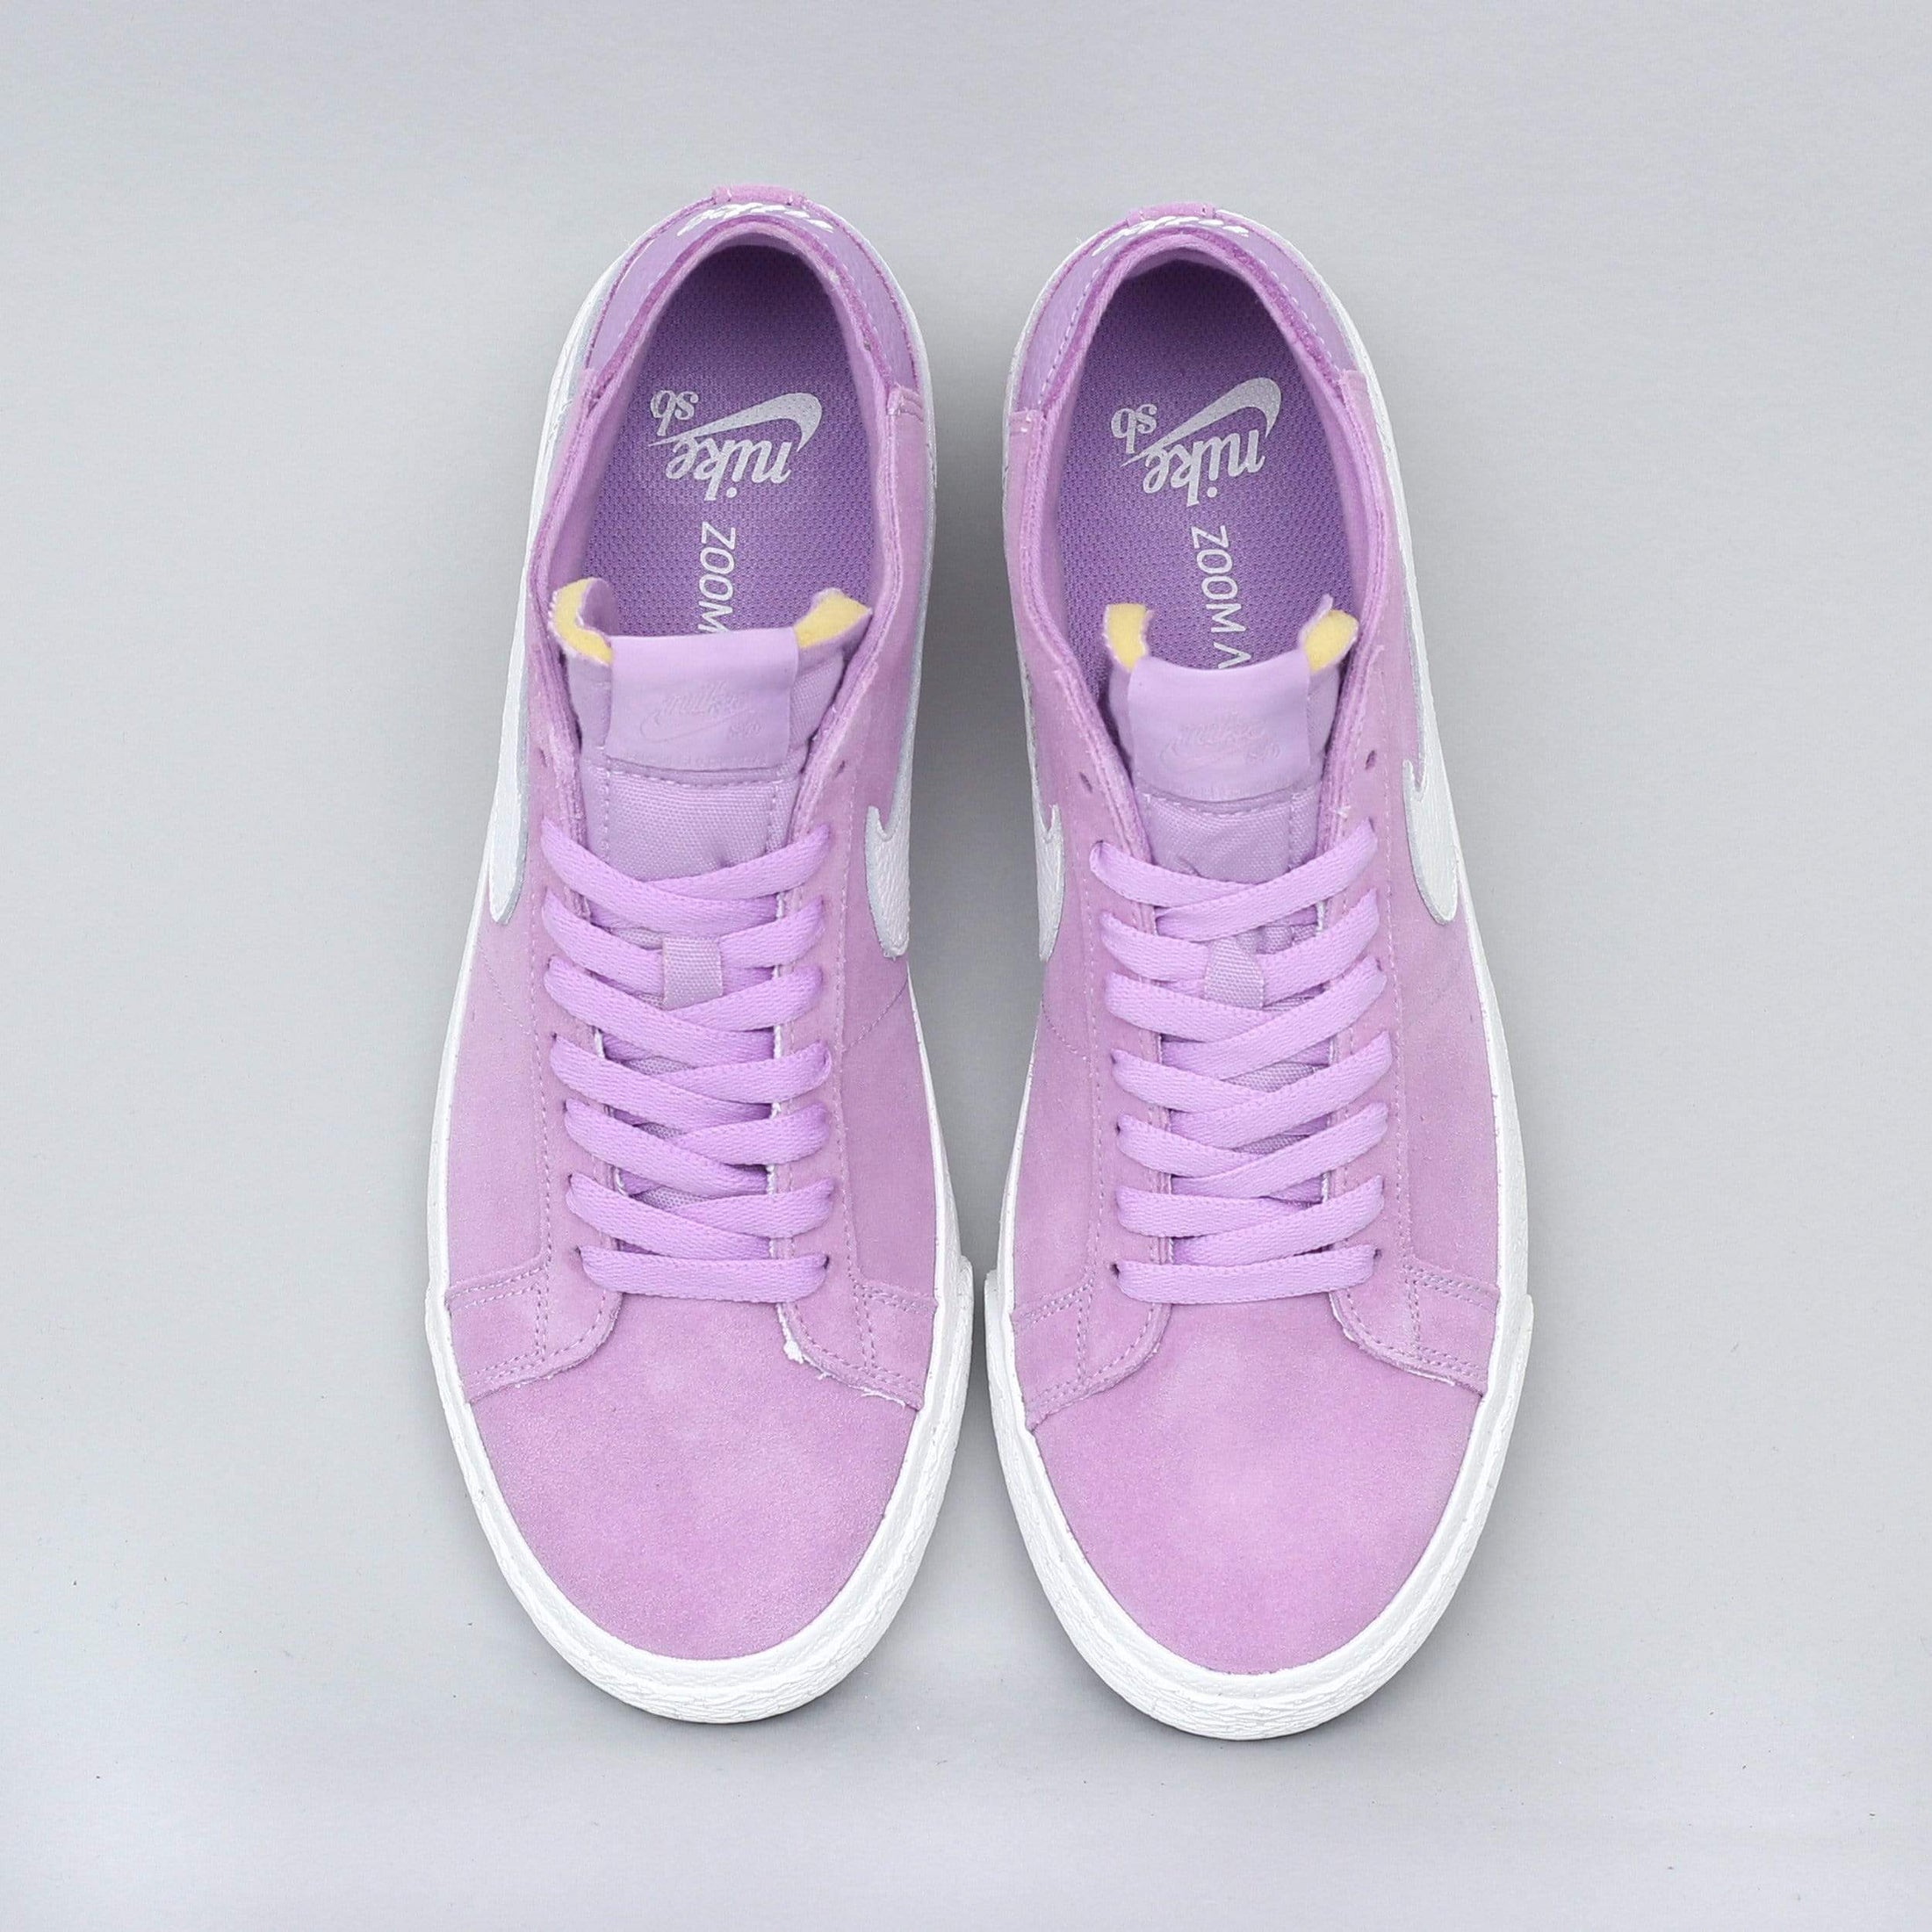 Nike SB Blazer Chukka Shoes Violet Star / Summit White